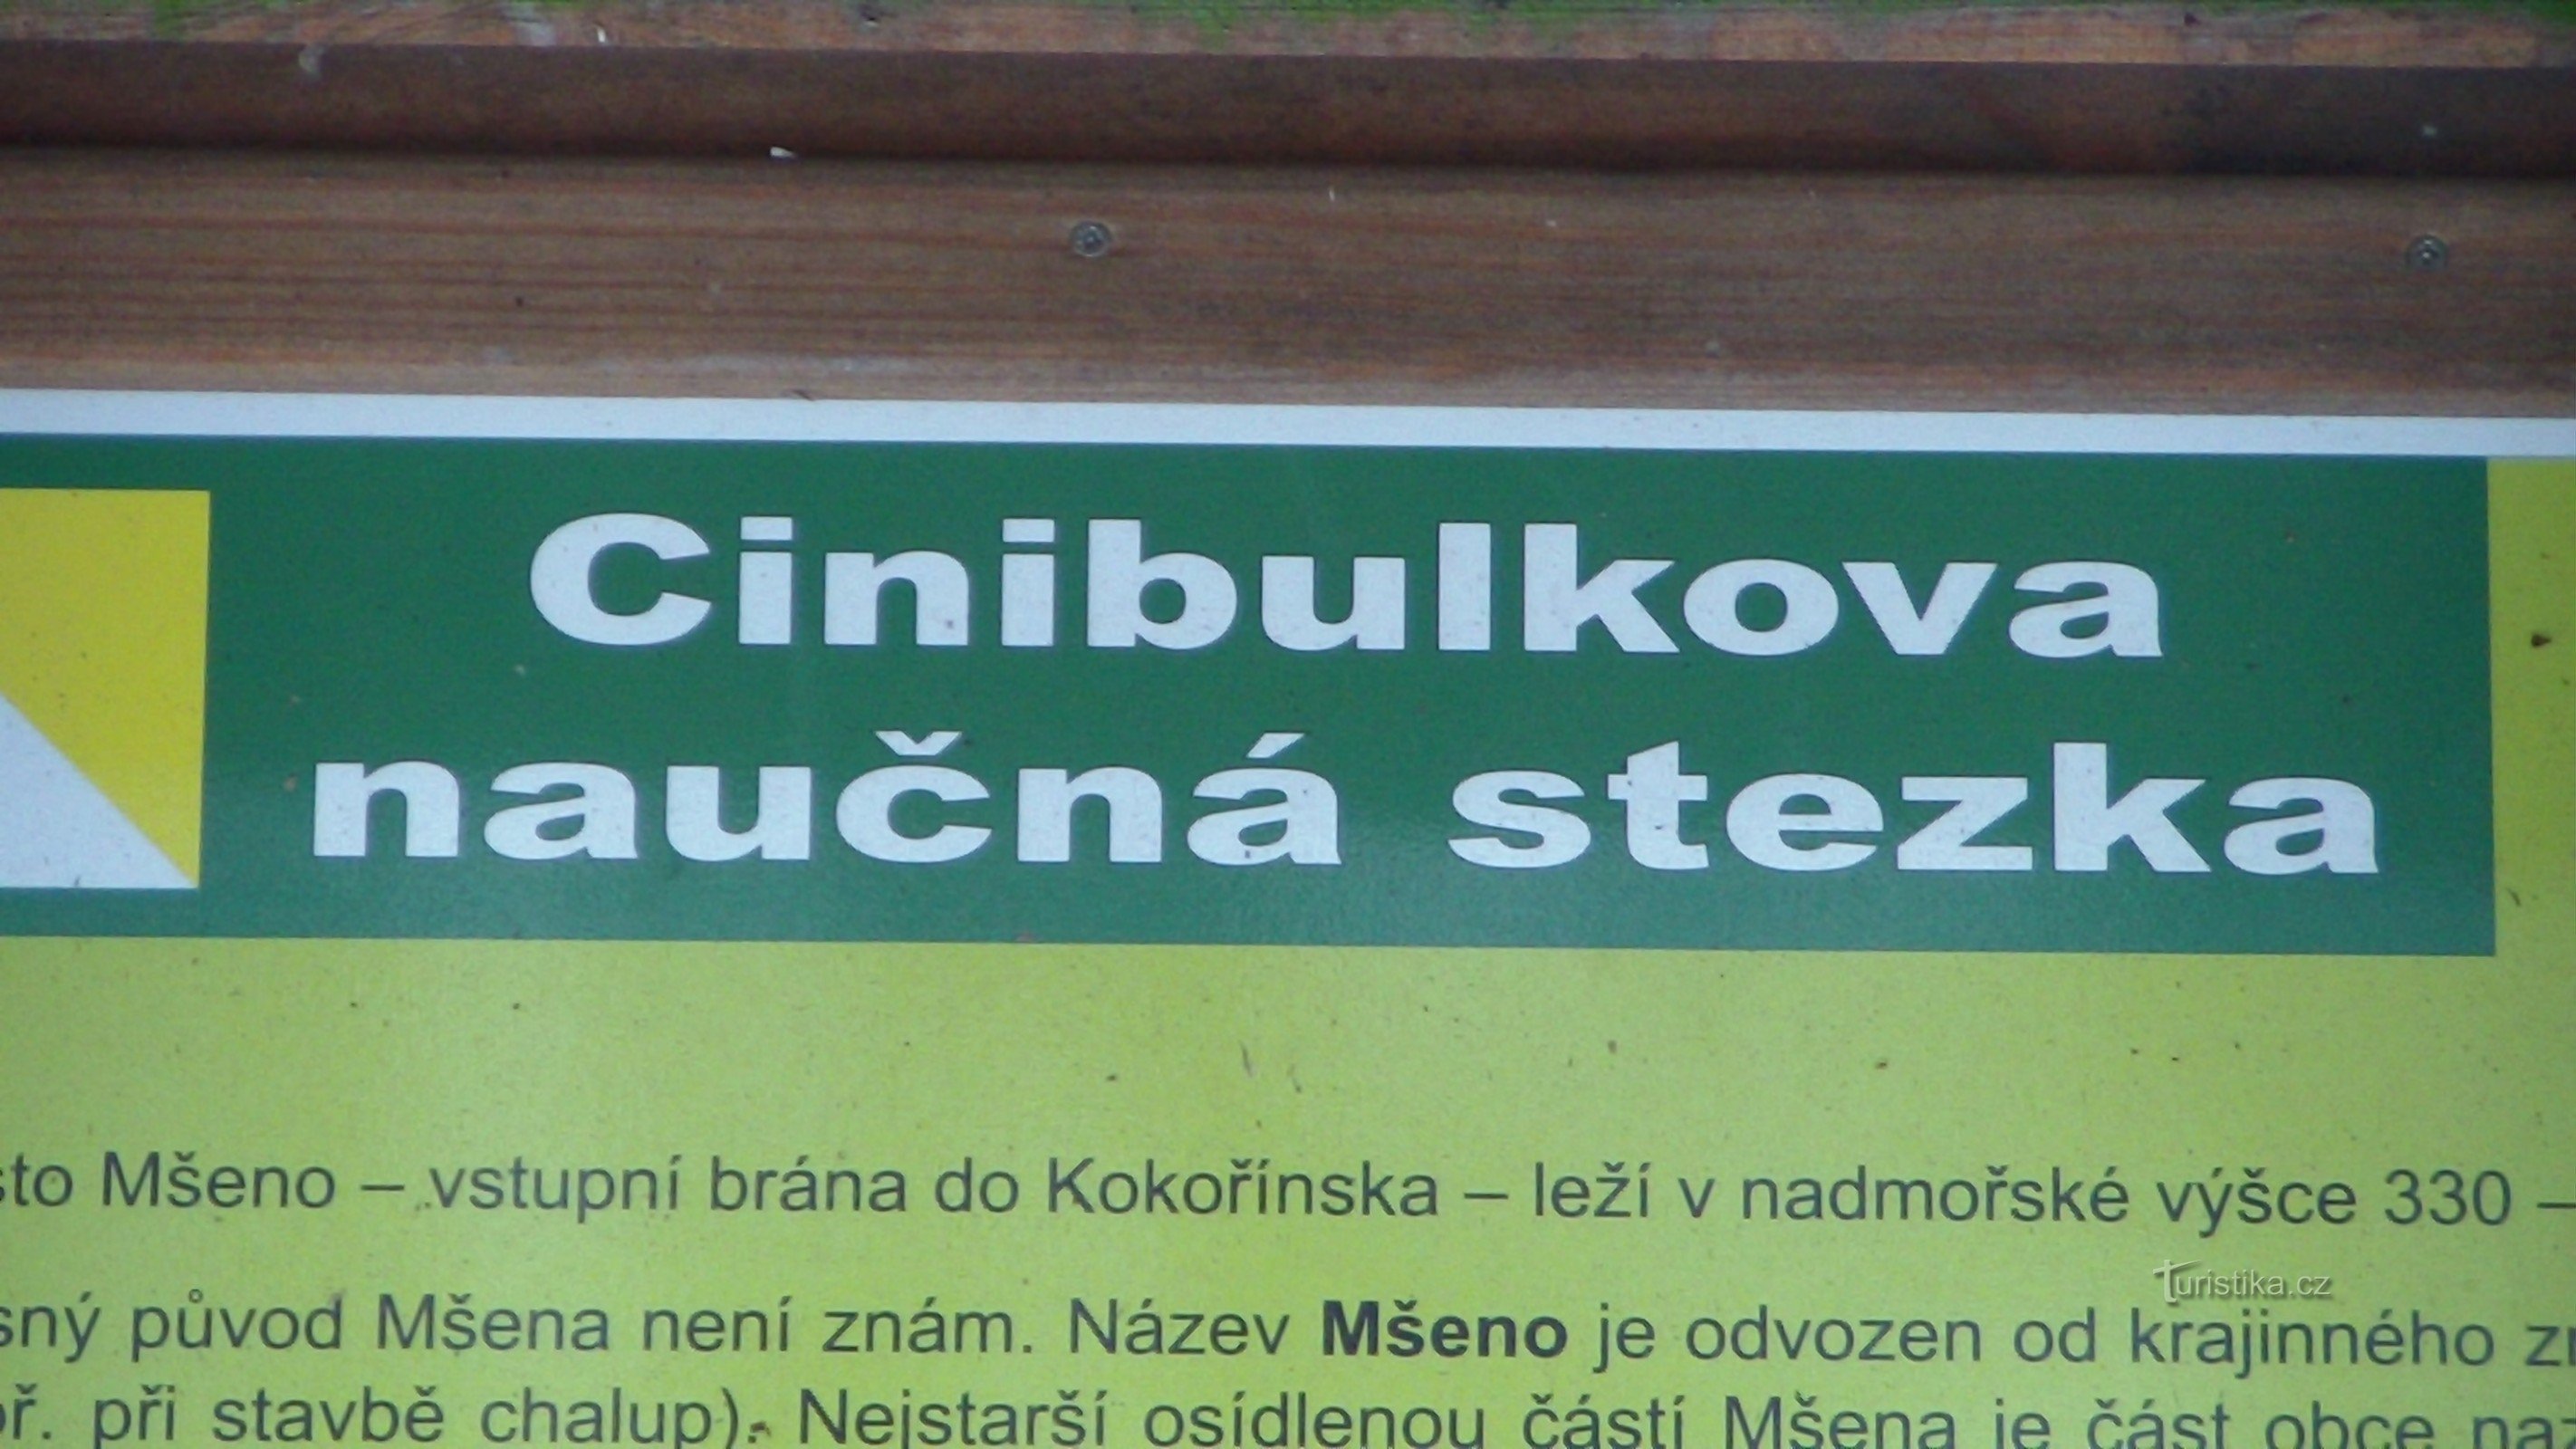 Đường mòn tự nhiên của Cinibulka